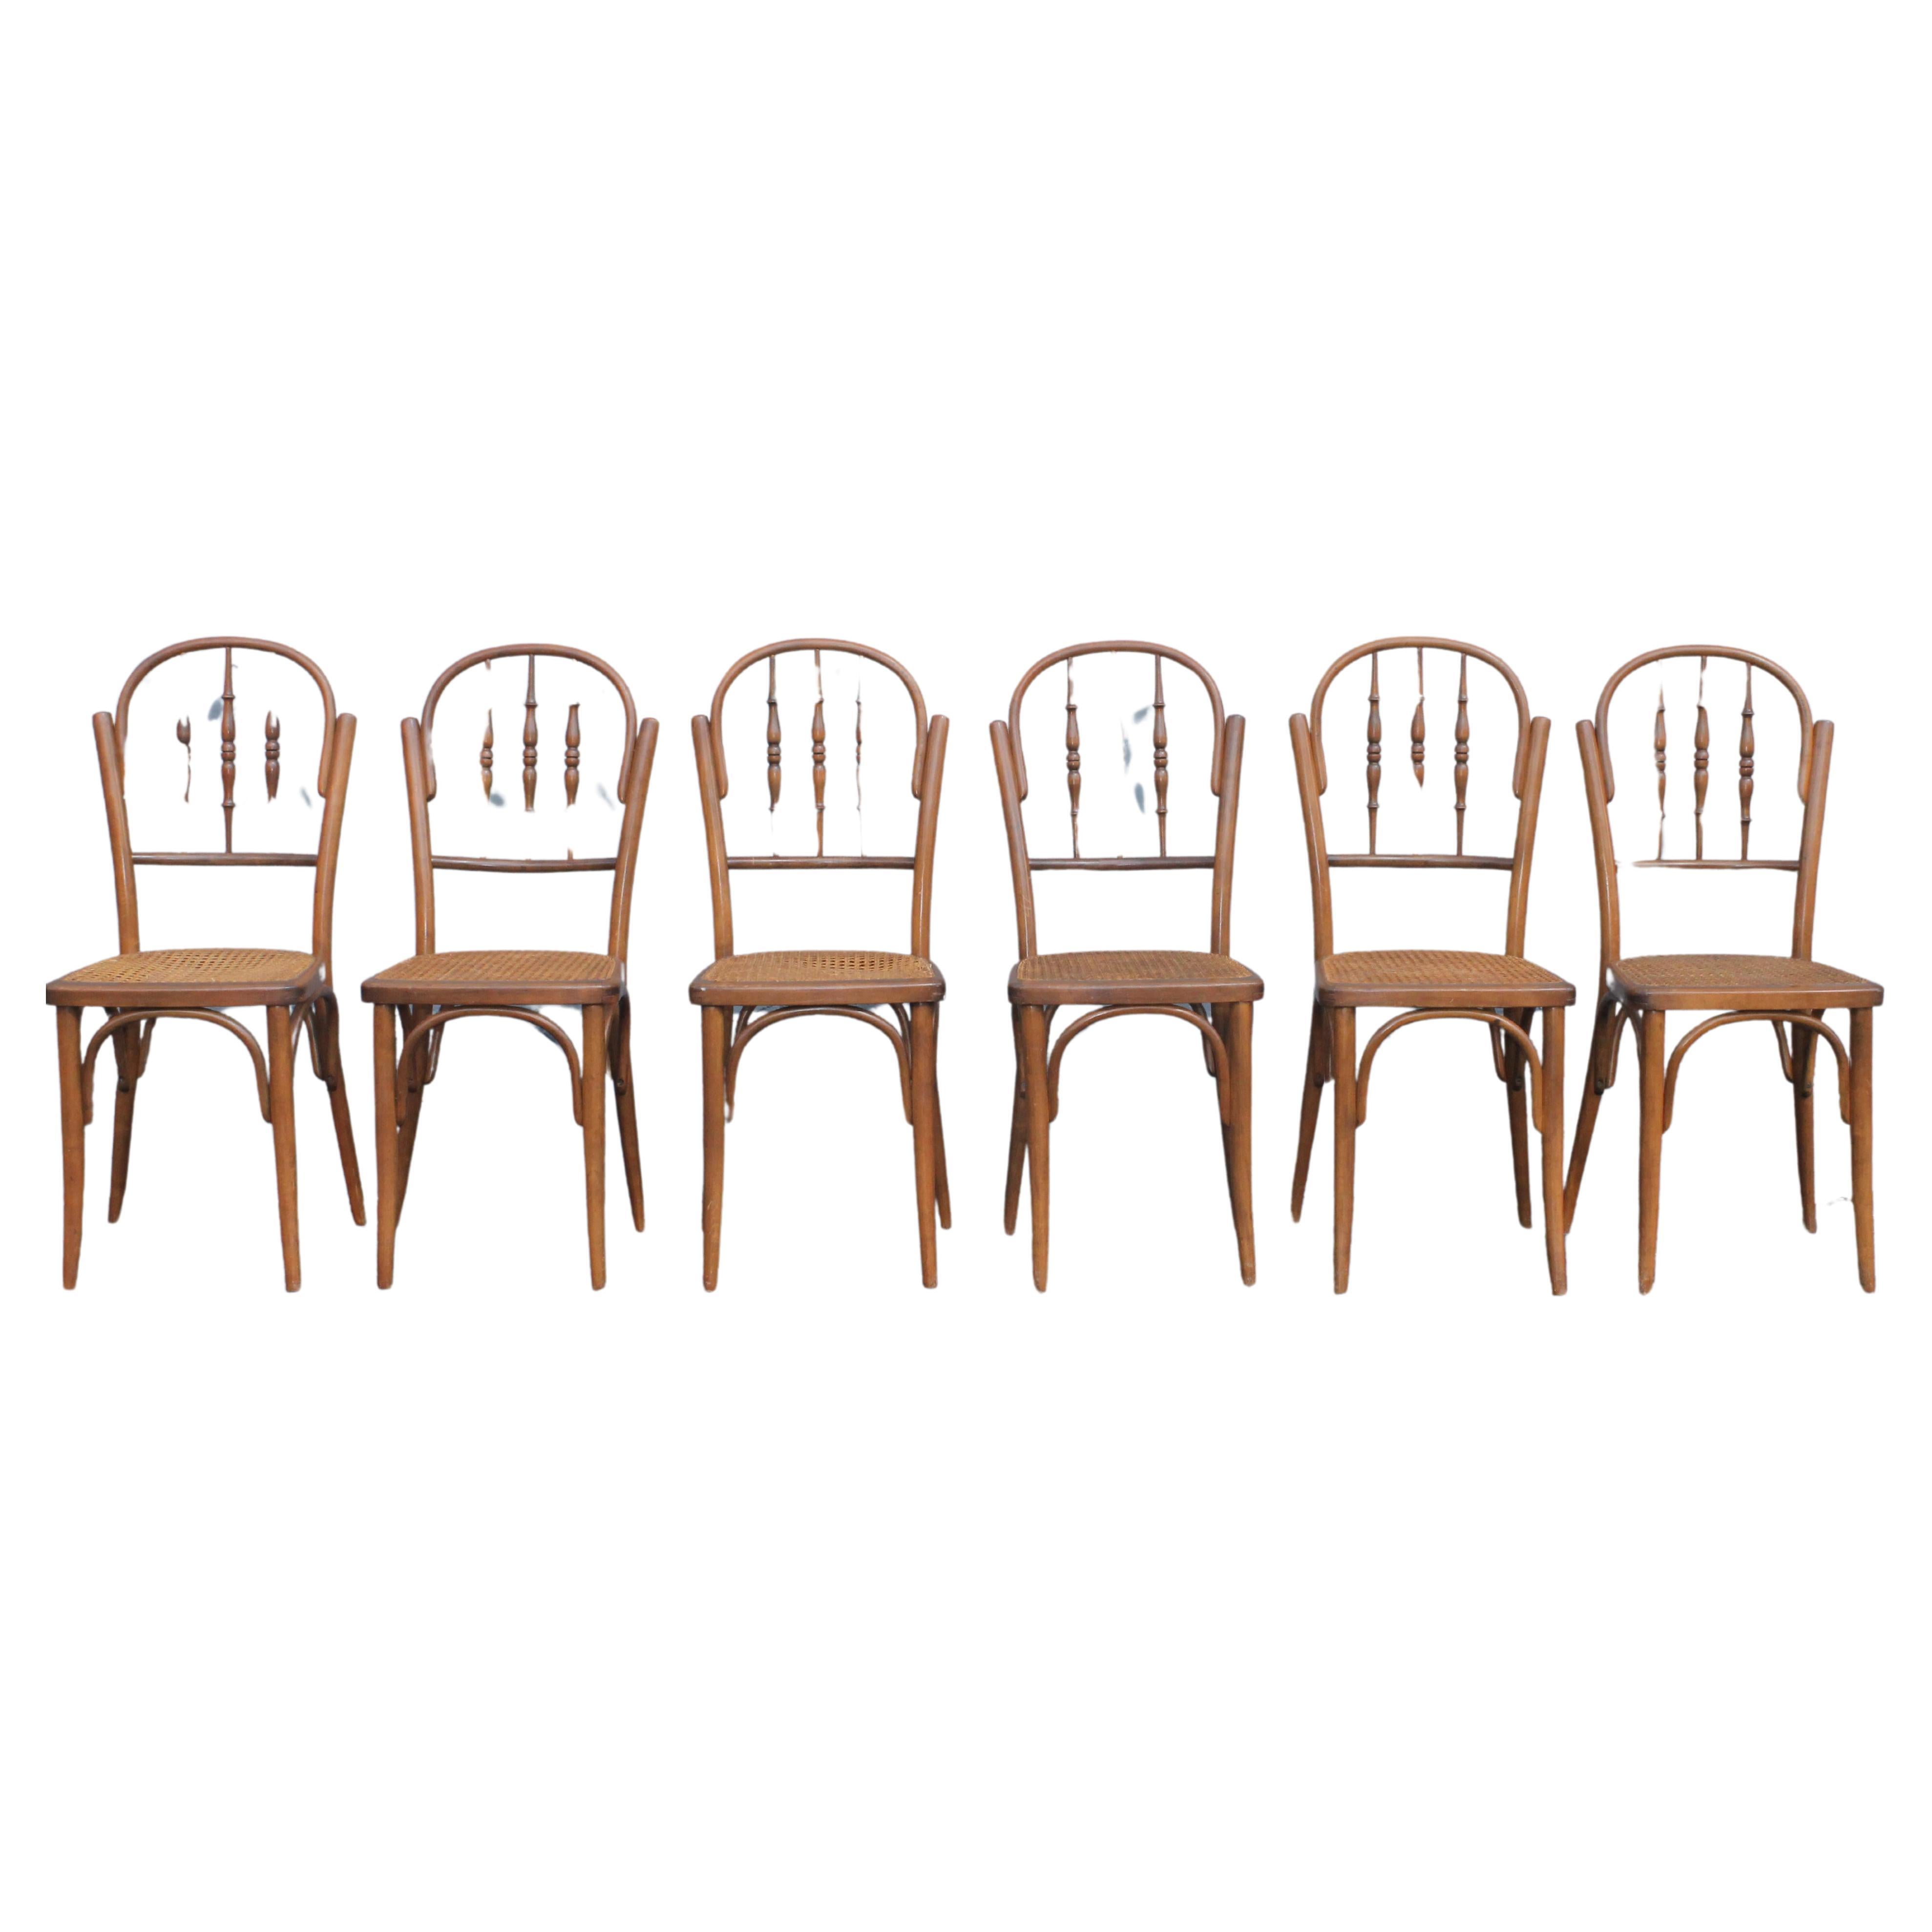 c1940's Satz von 6 französischen Landhausstil Caned Dining Chairs